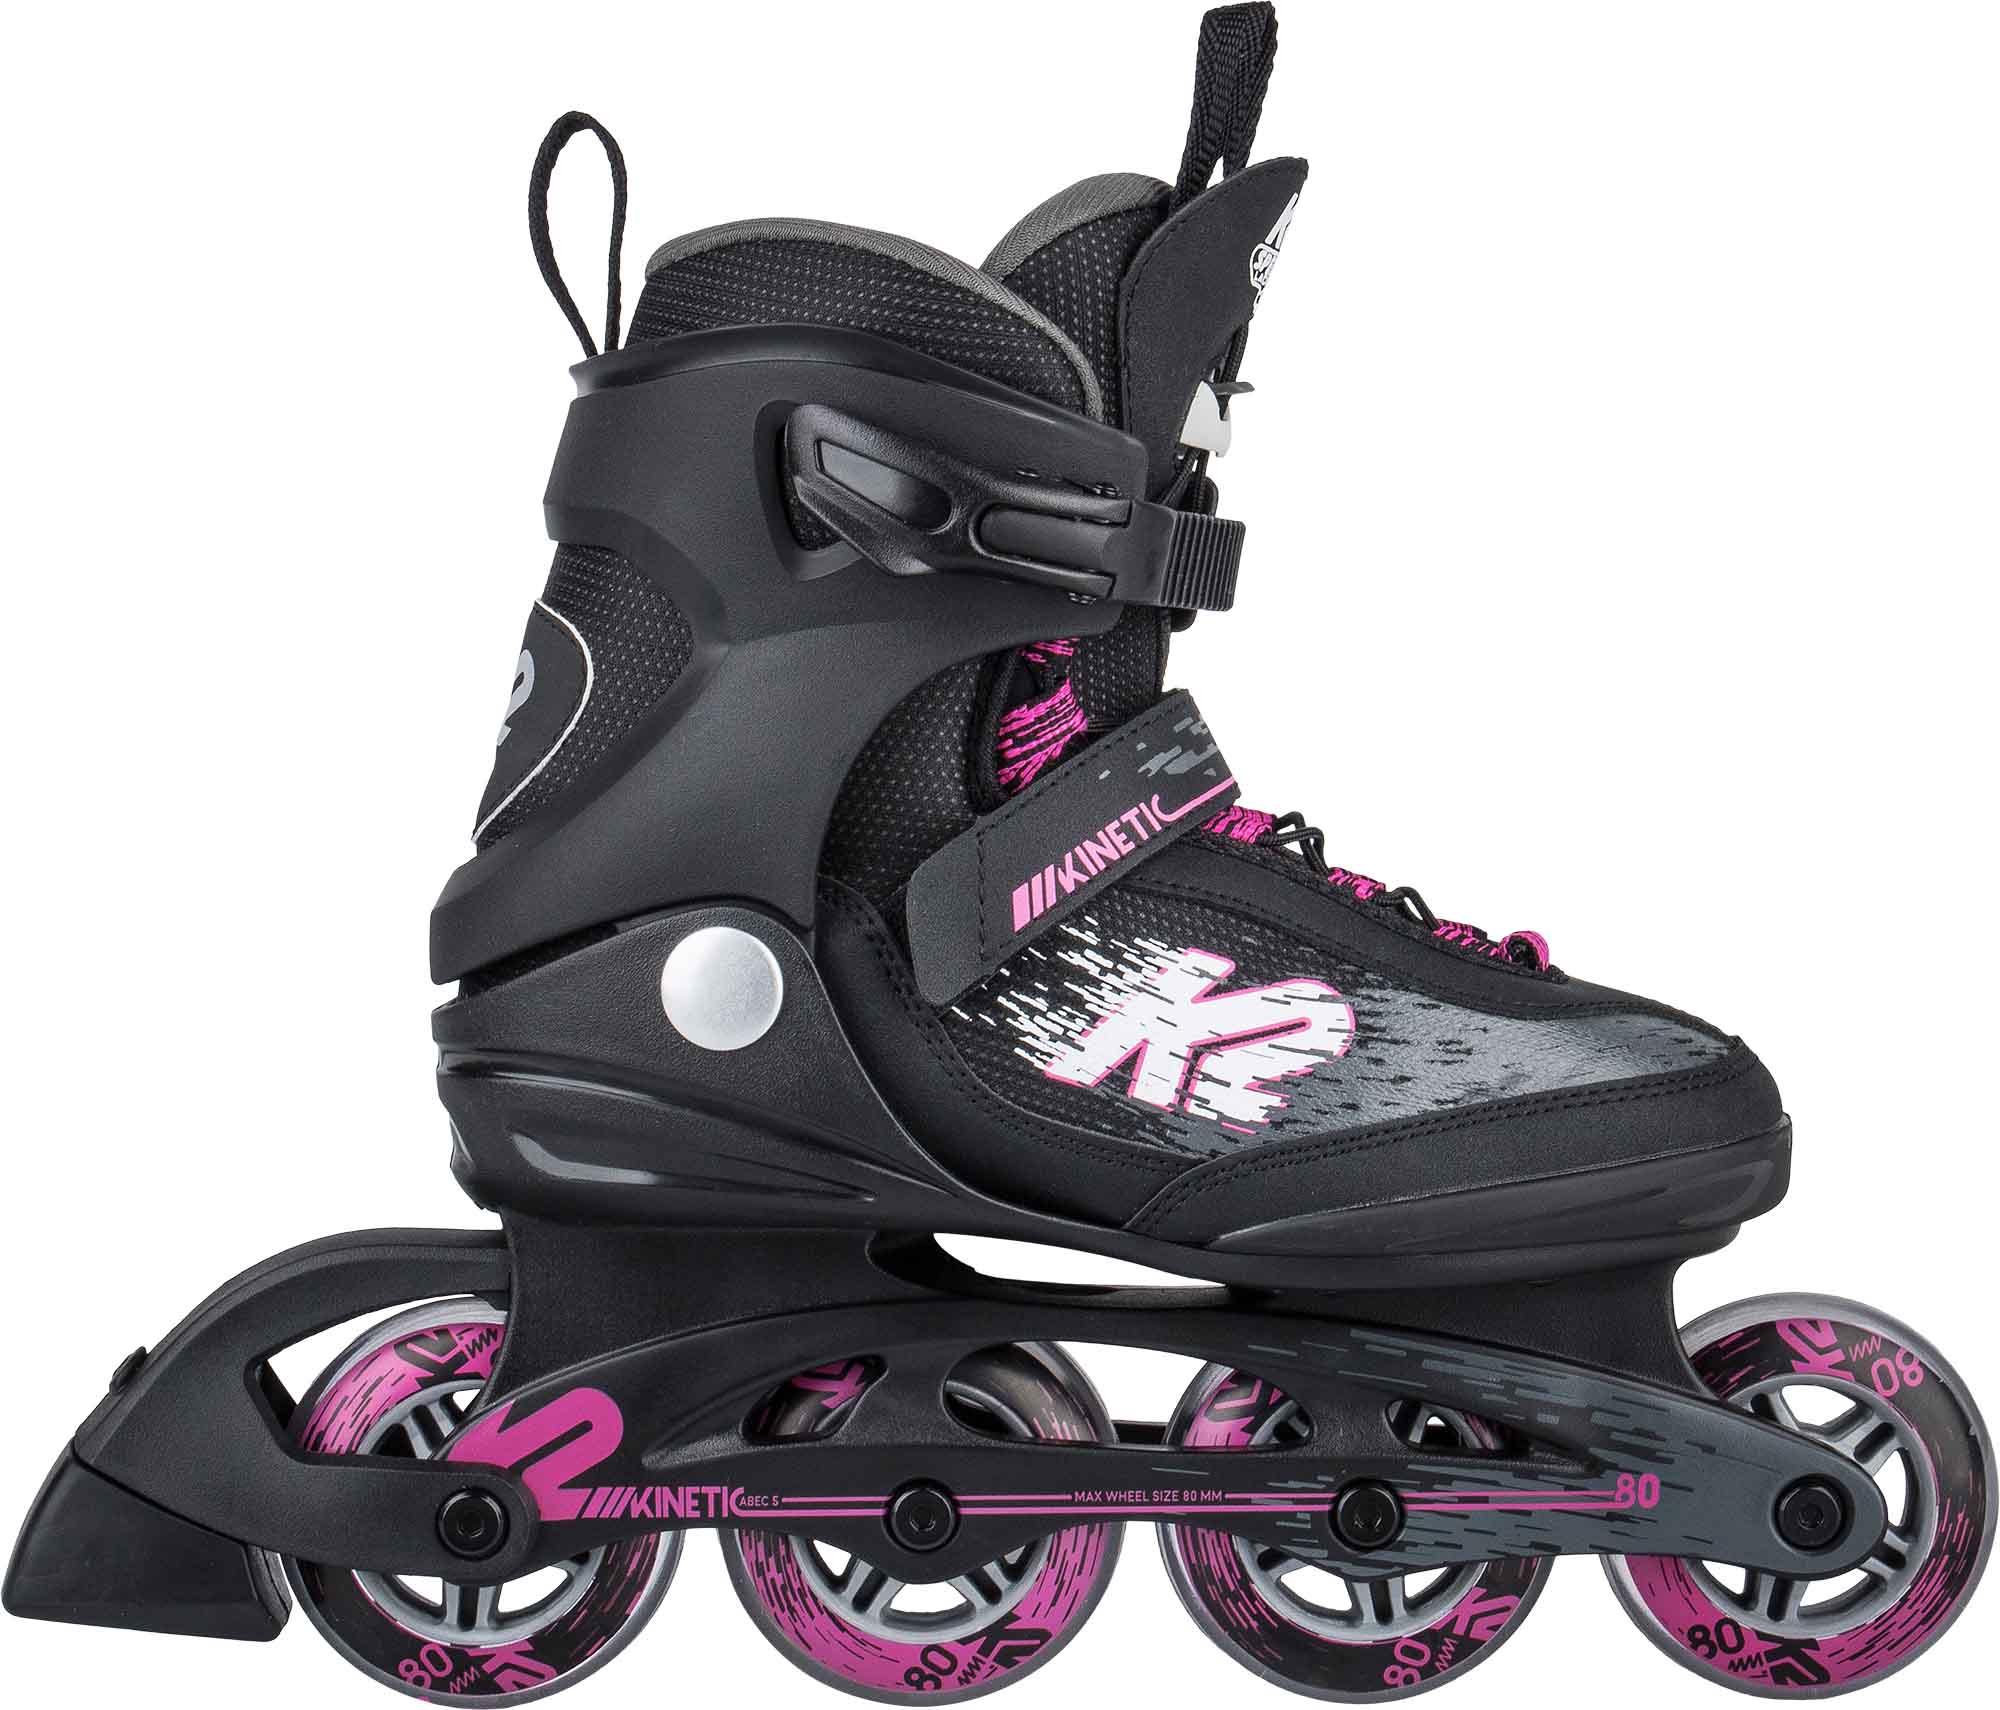 Women’s roller skates